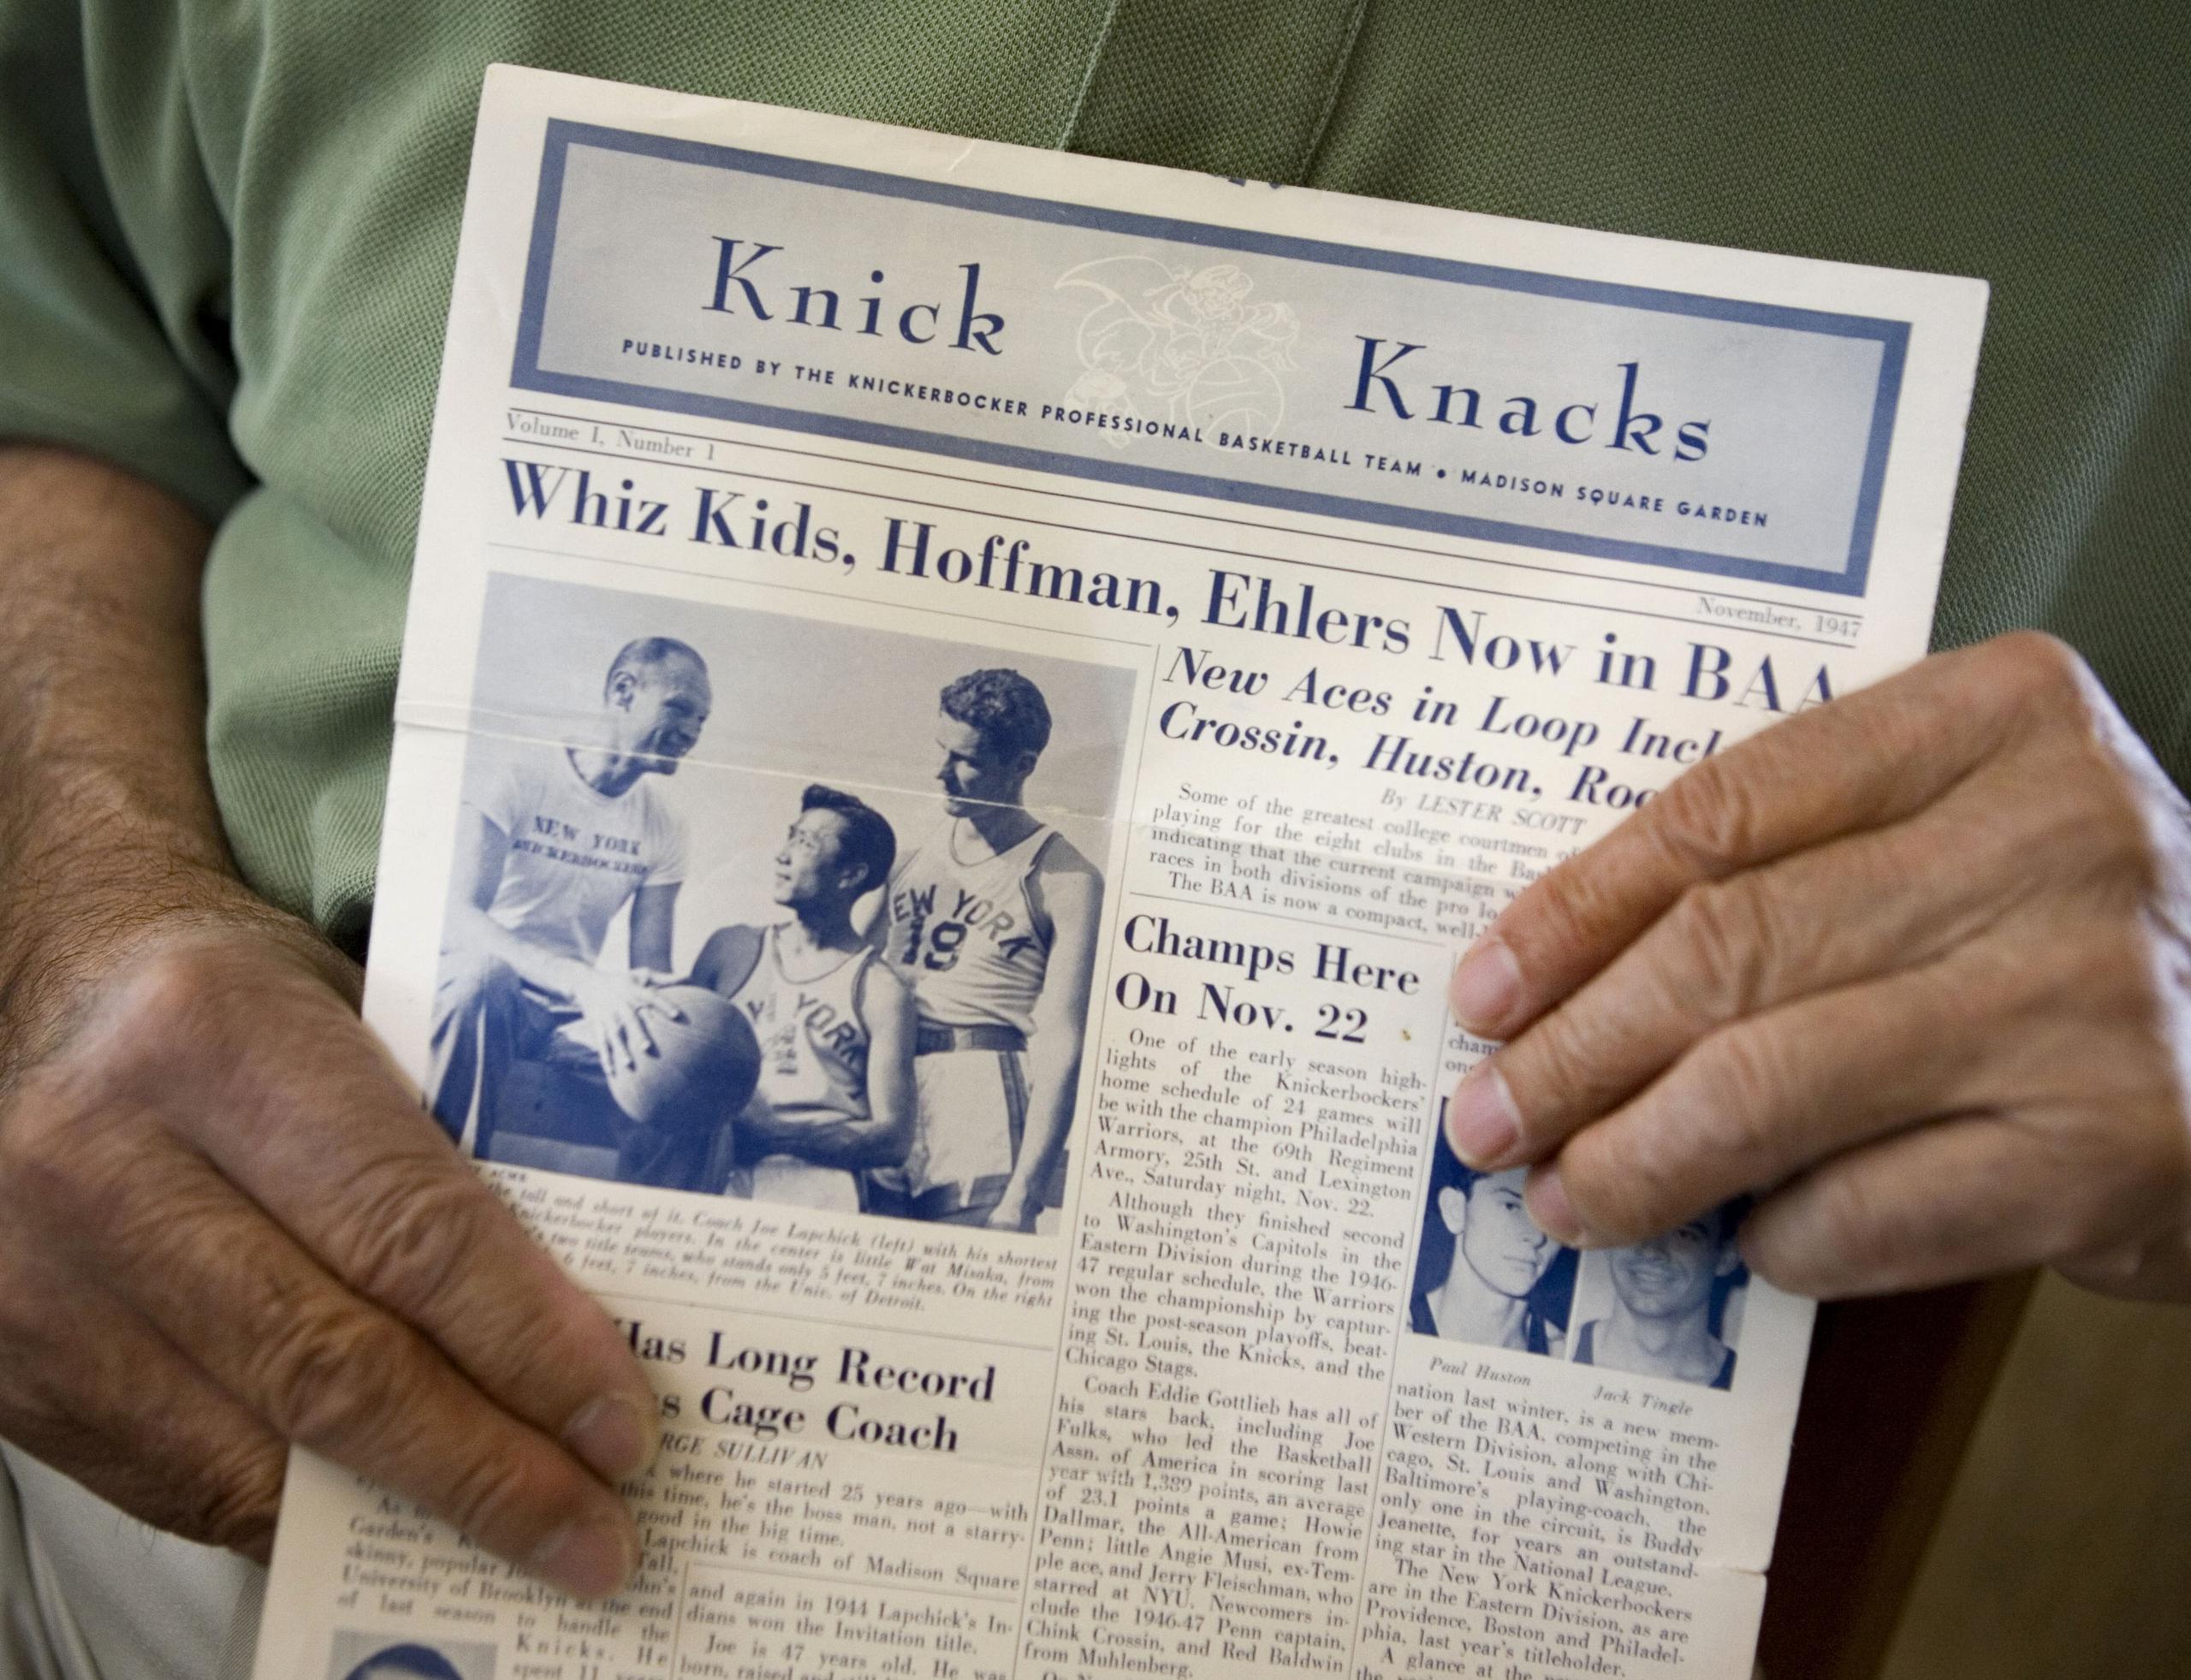 En esta foto aparece un documento original de la primera carta informativa de los New York Knicks, el Knick Knacks.